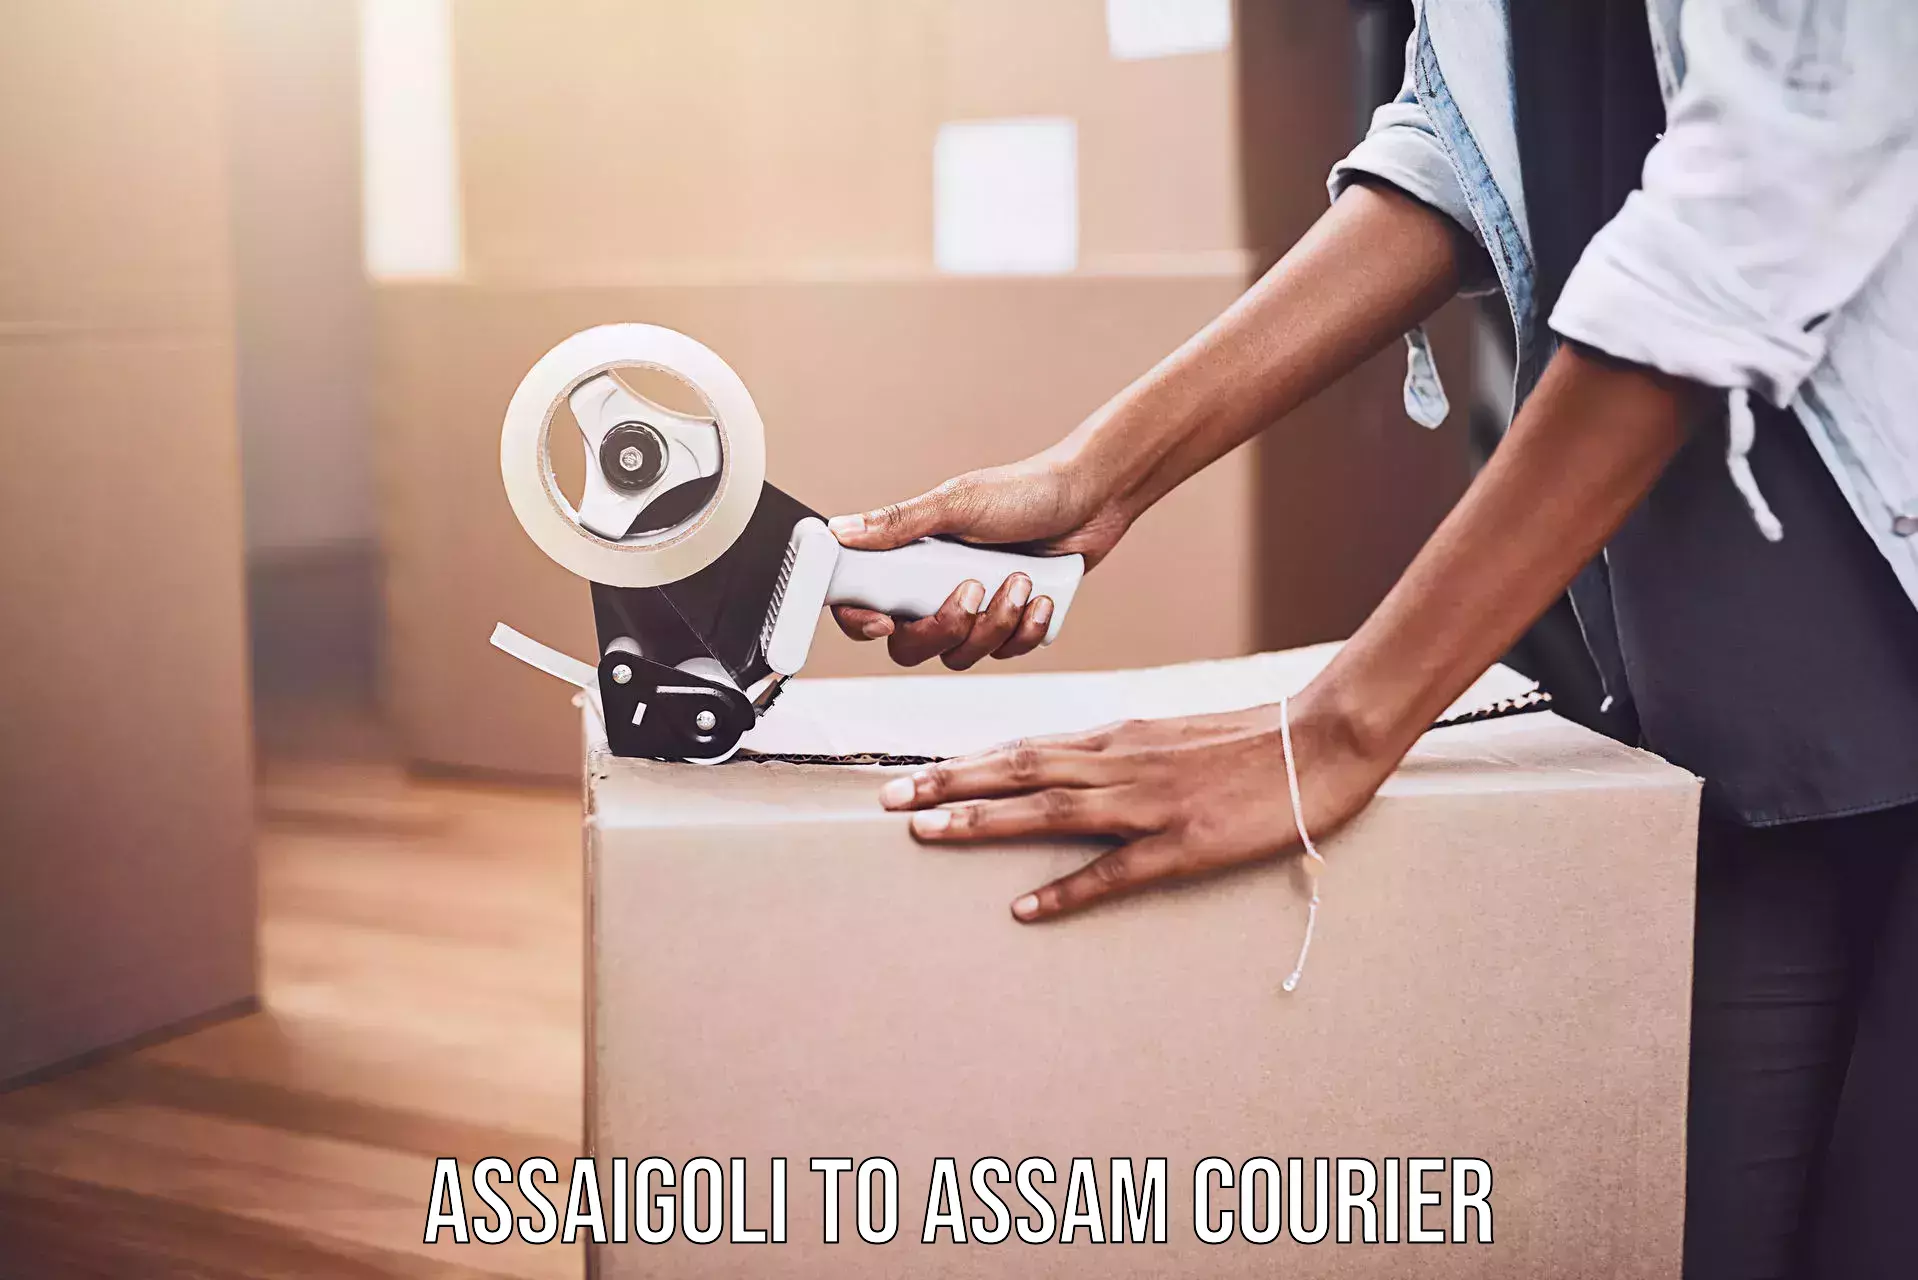 Courier service comparison Assaigoli to Assam